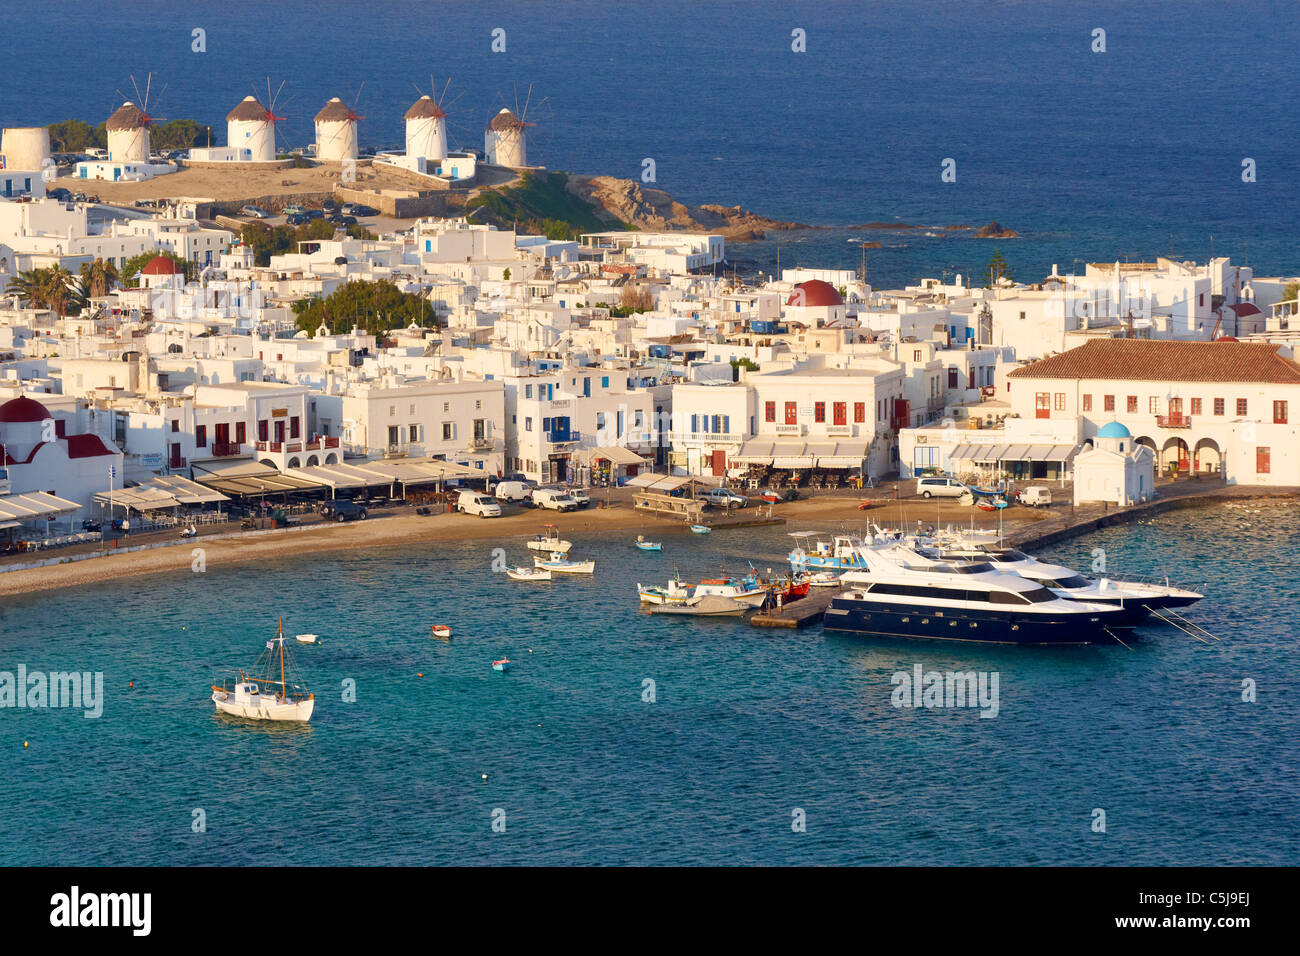 Mykonos - Cyclades Islands, Greece Stock Photo